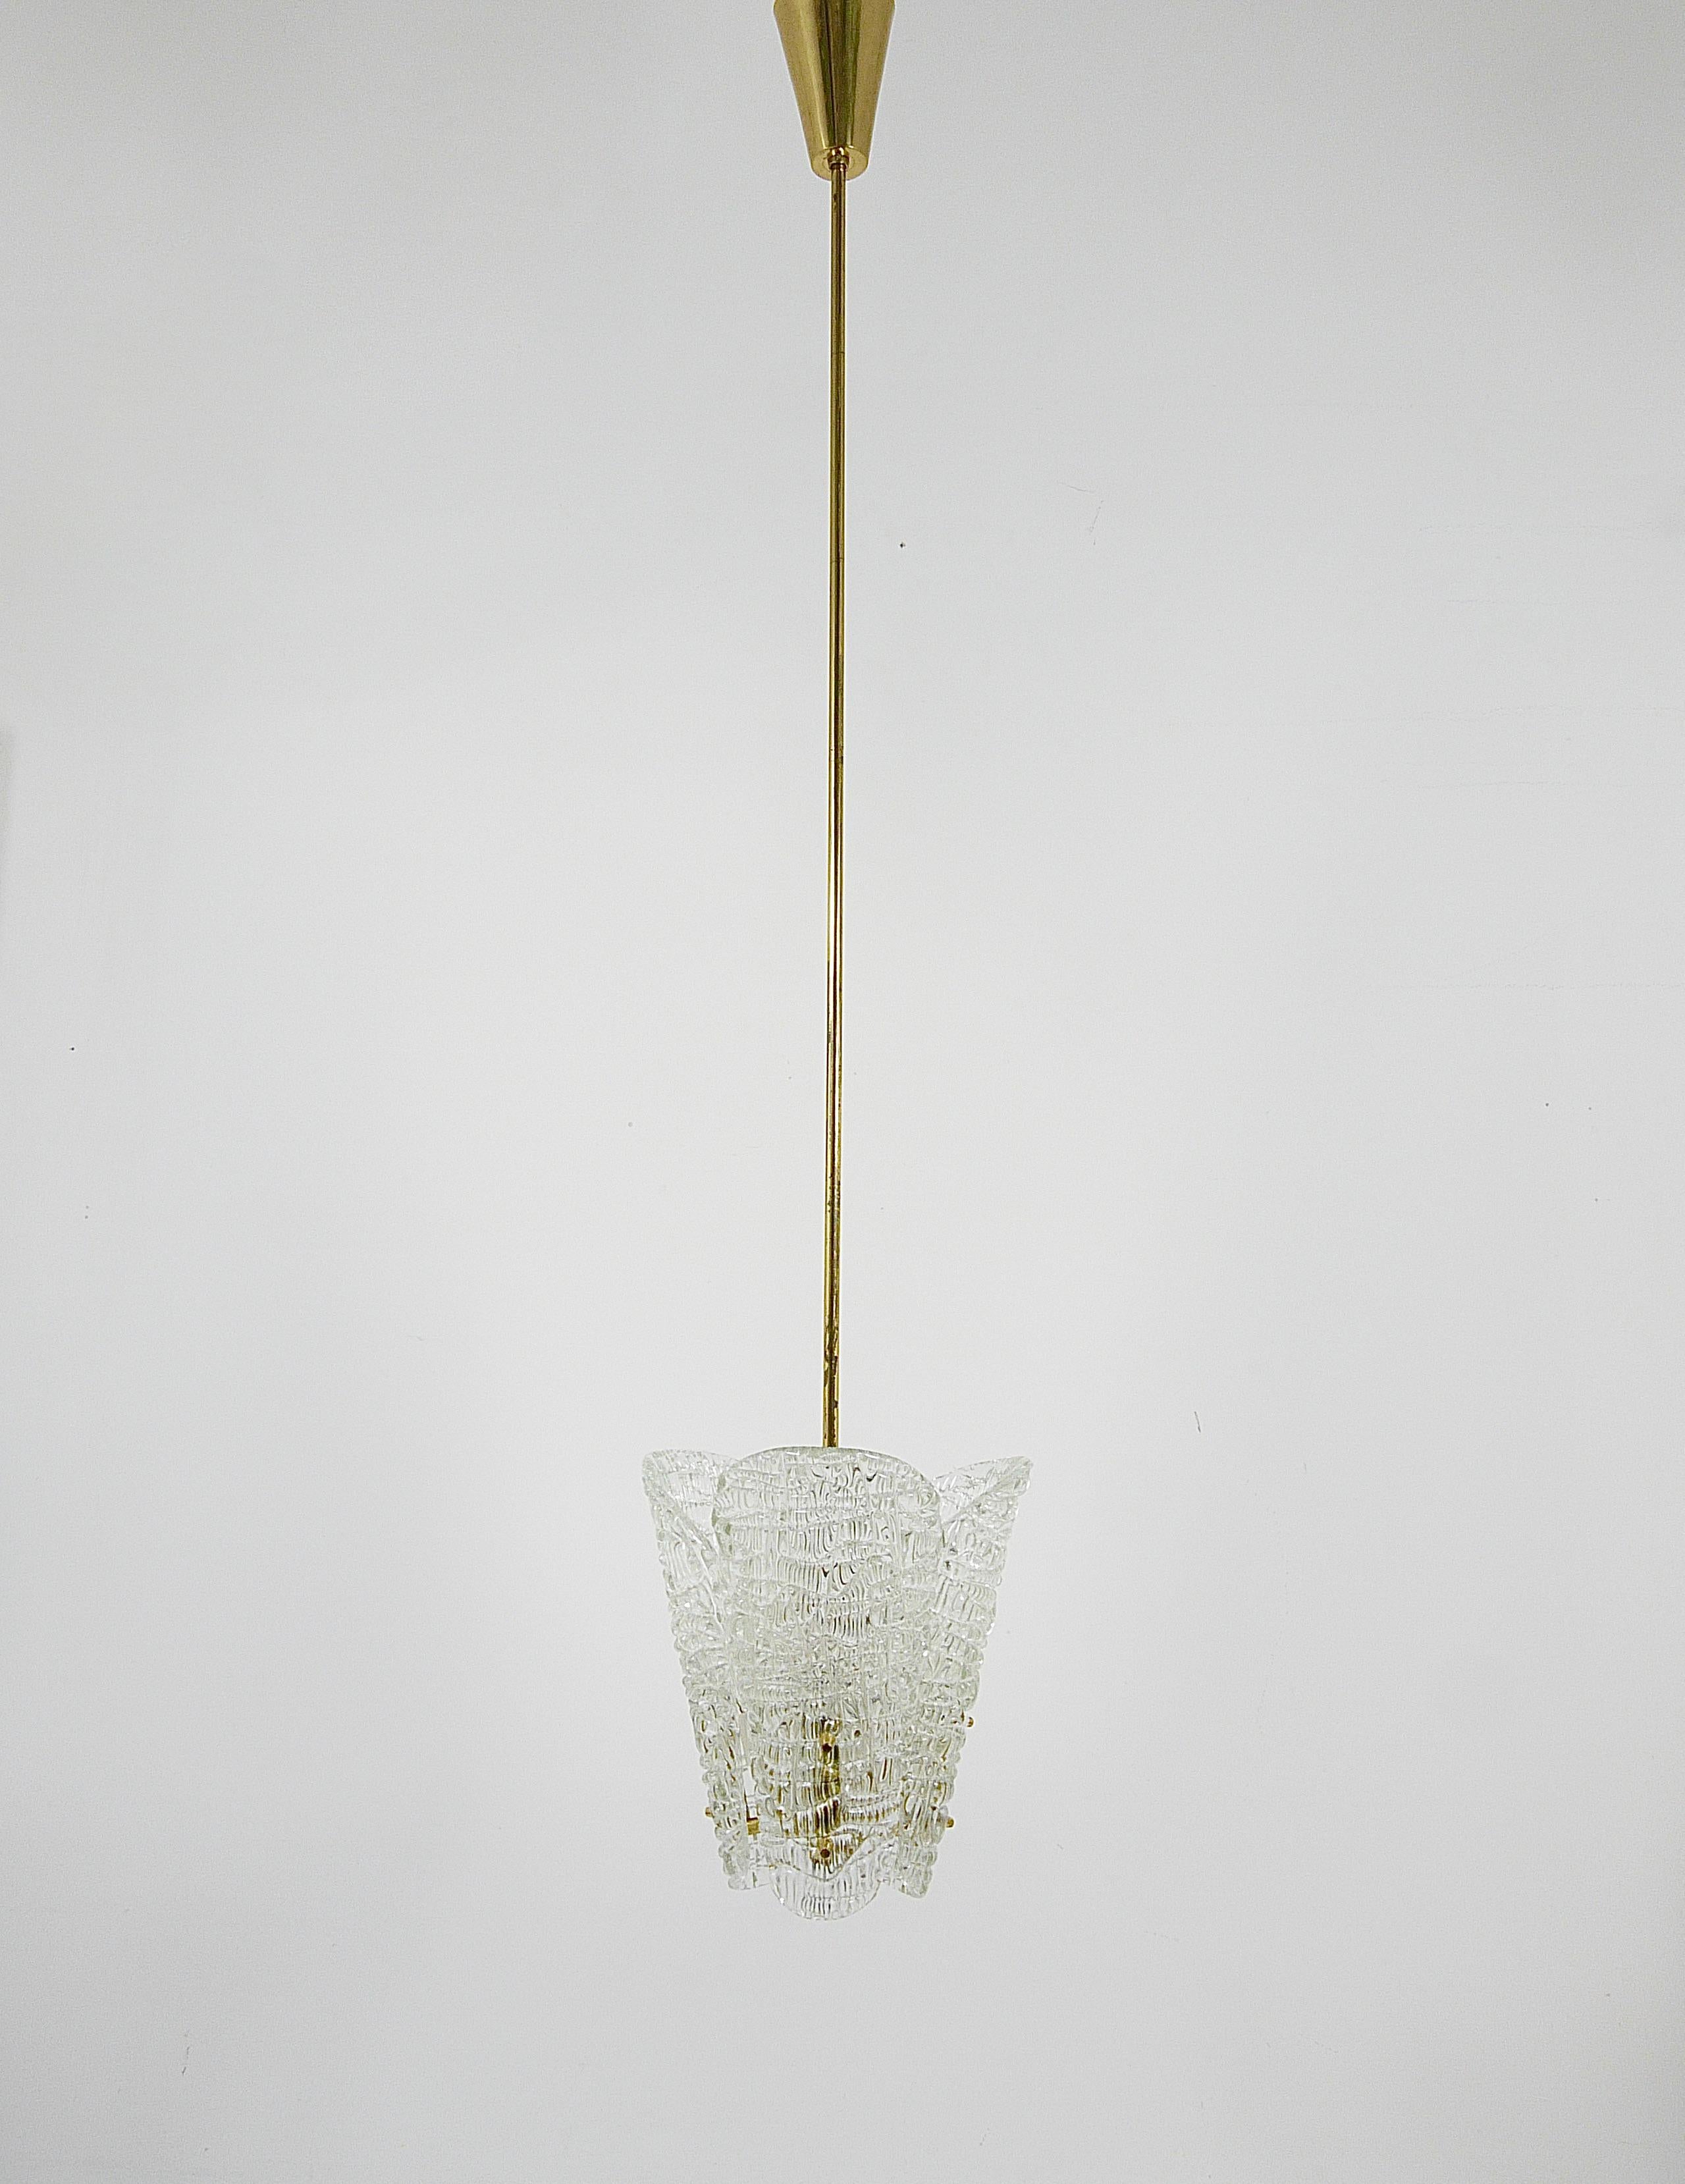 Wir präsentieren einen zierlichen Messing-Kronleuchter von J.T. Kalmar aus Wien, Österreich, hergestellt in den 1950er Jahren. Dieses schöne Stück besteht aus drei eleganten, löffelförmigen Lampenschirmen aus strukturiertem Glas, die an polierten